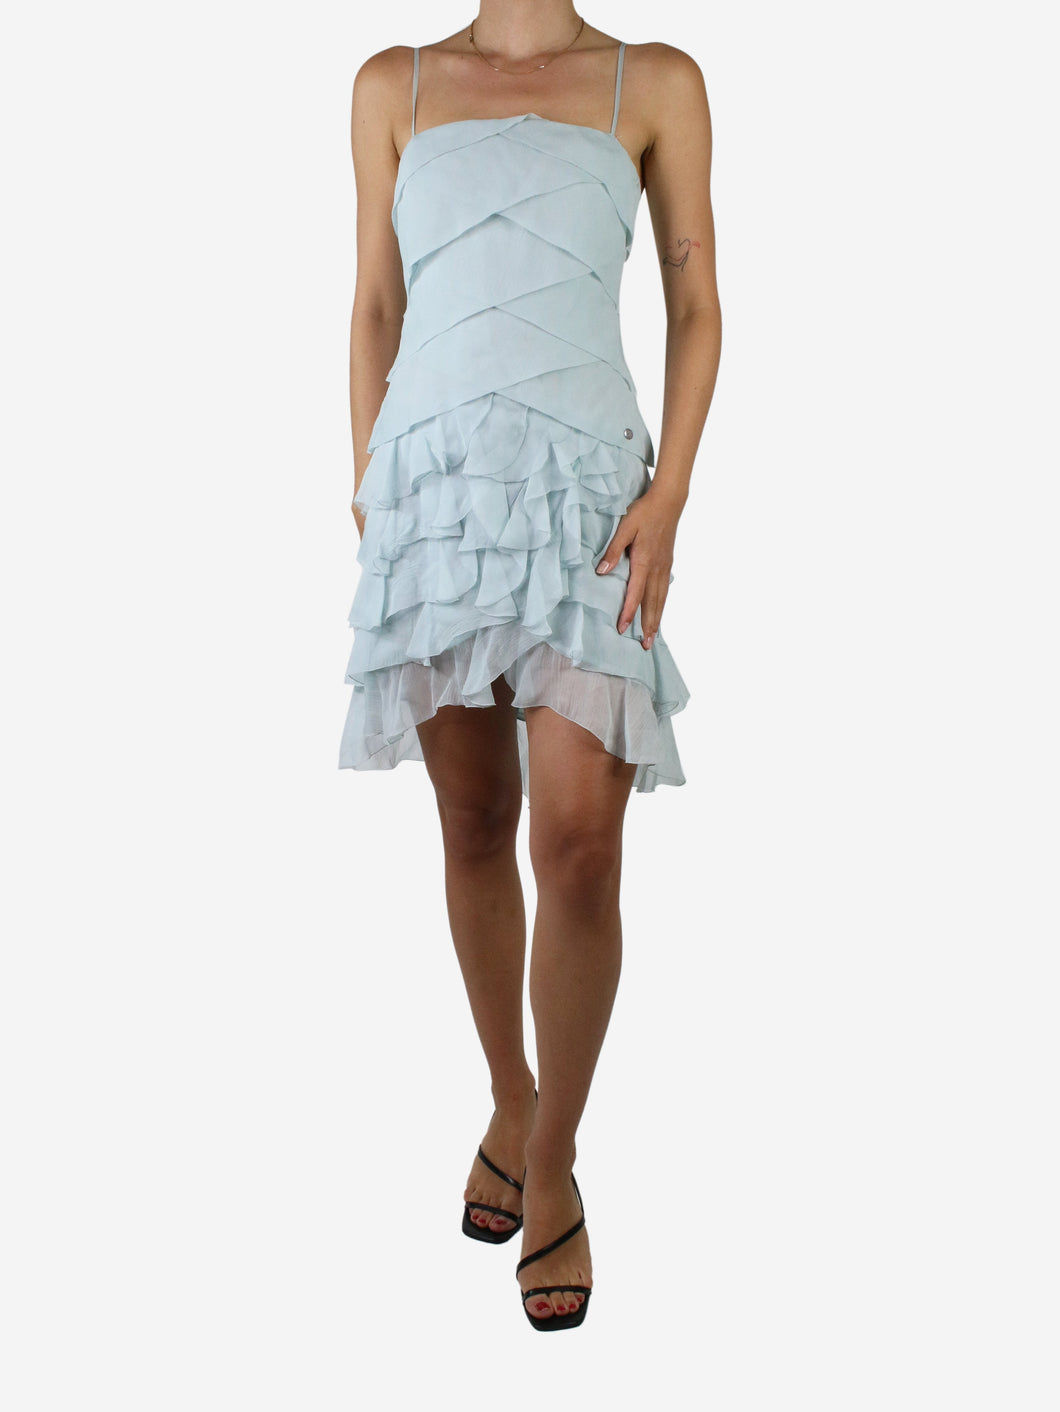 Chanel Iman Mini Dress  Chanel Iman Mini Dress Lookbook  StyleBistro